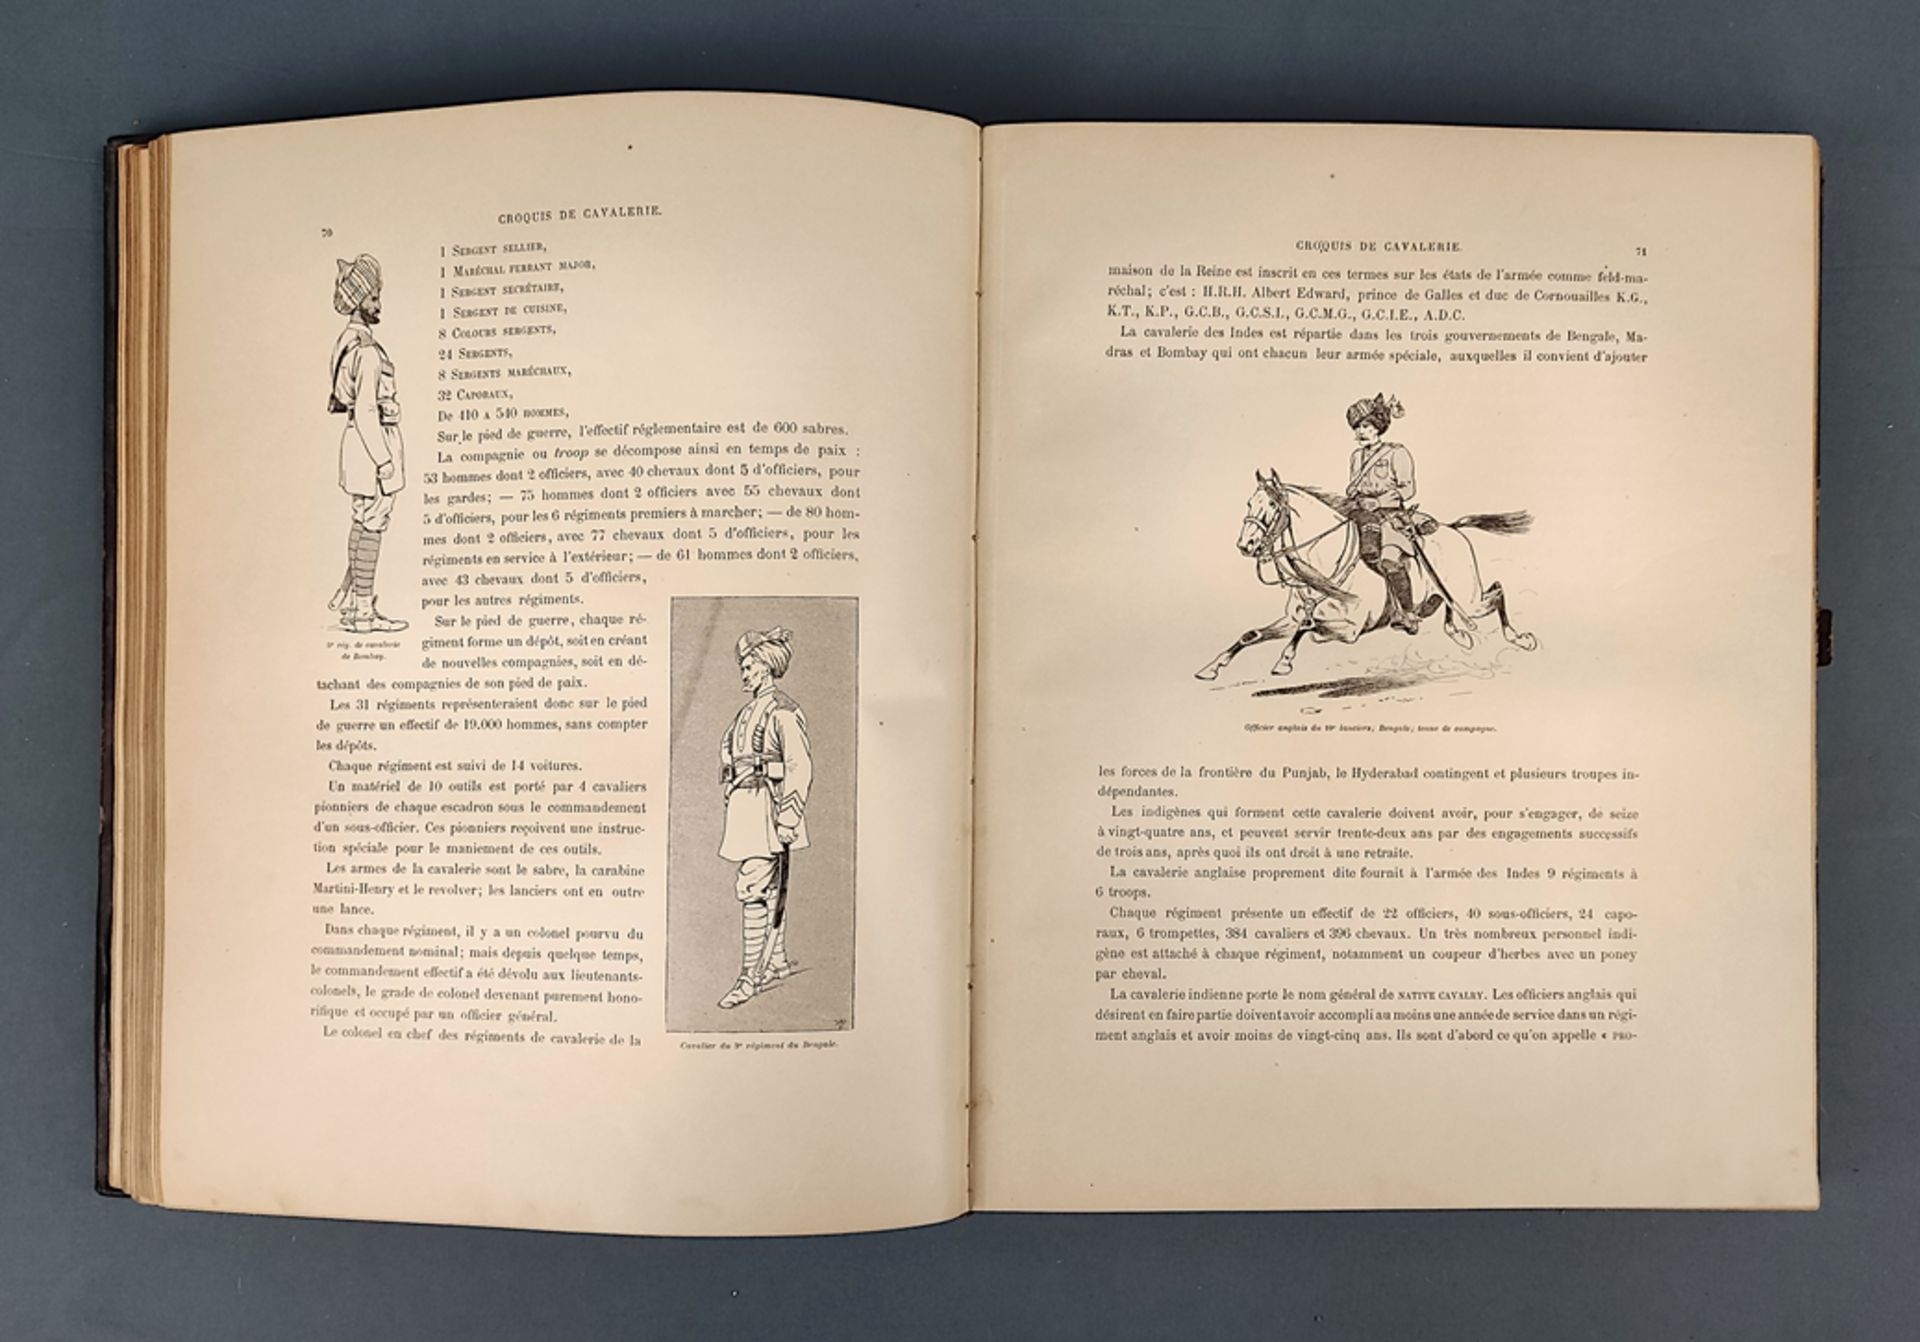 Book, Vallet, L. "A travers l'Europe. Croquis de cavalerie", Paris 1893, Libraire de Firmin-Didot e - Image 6 of 7